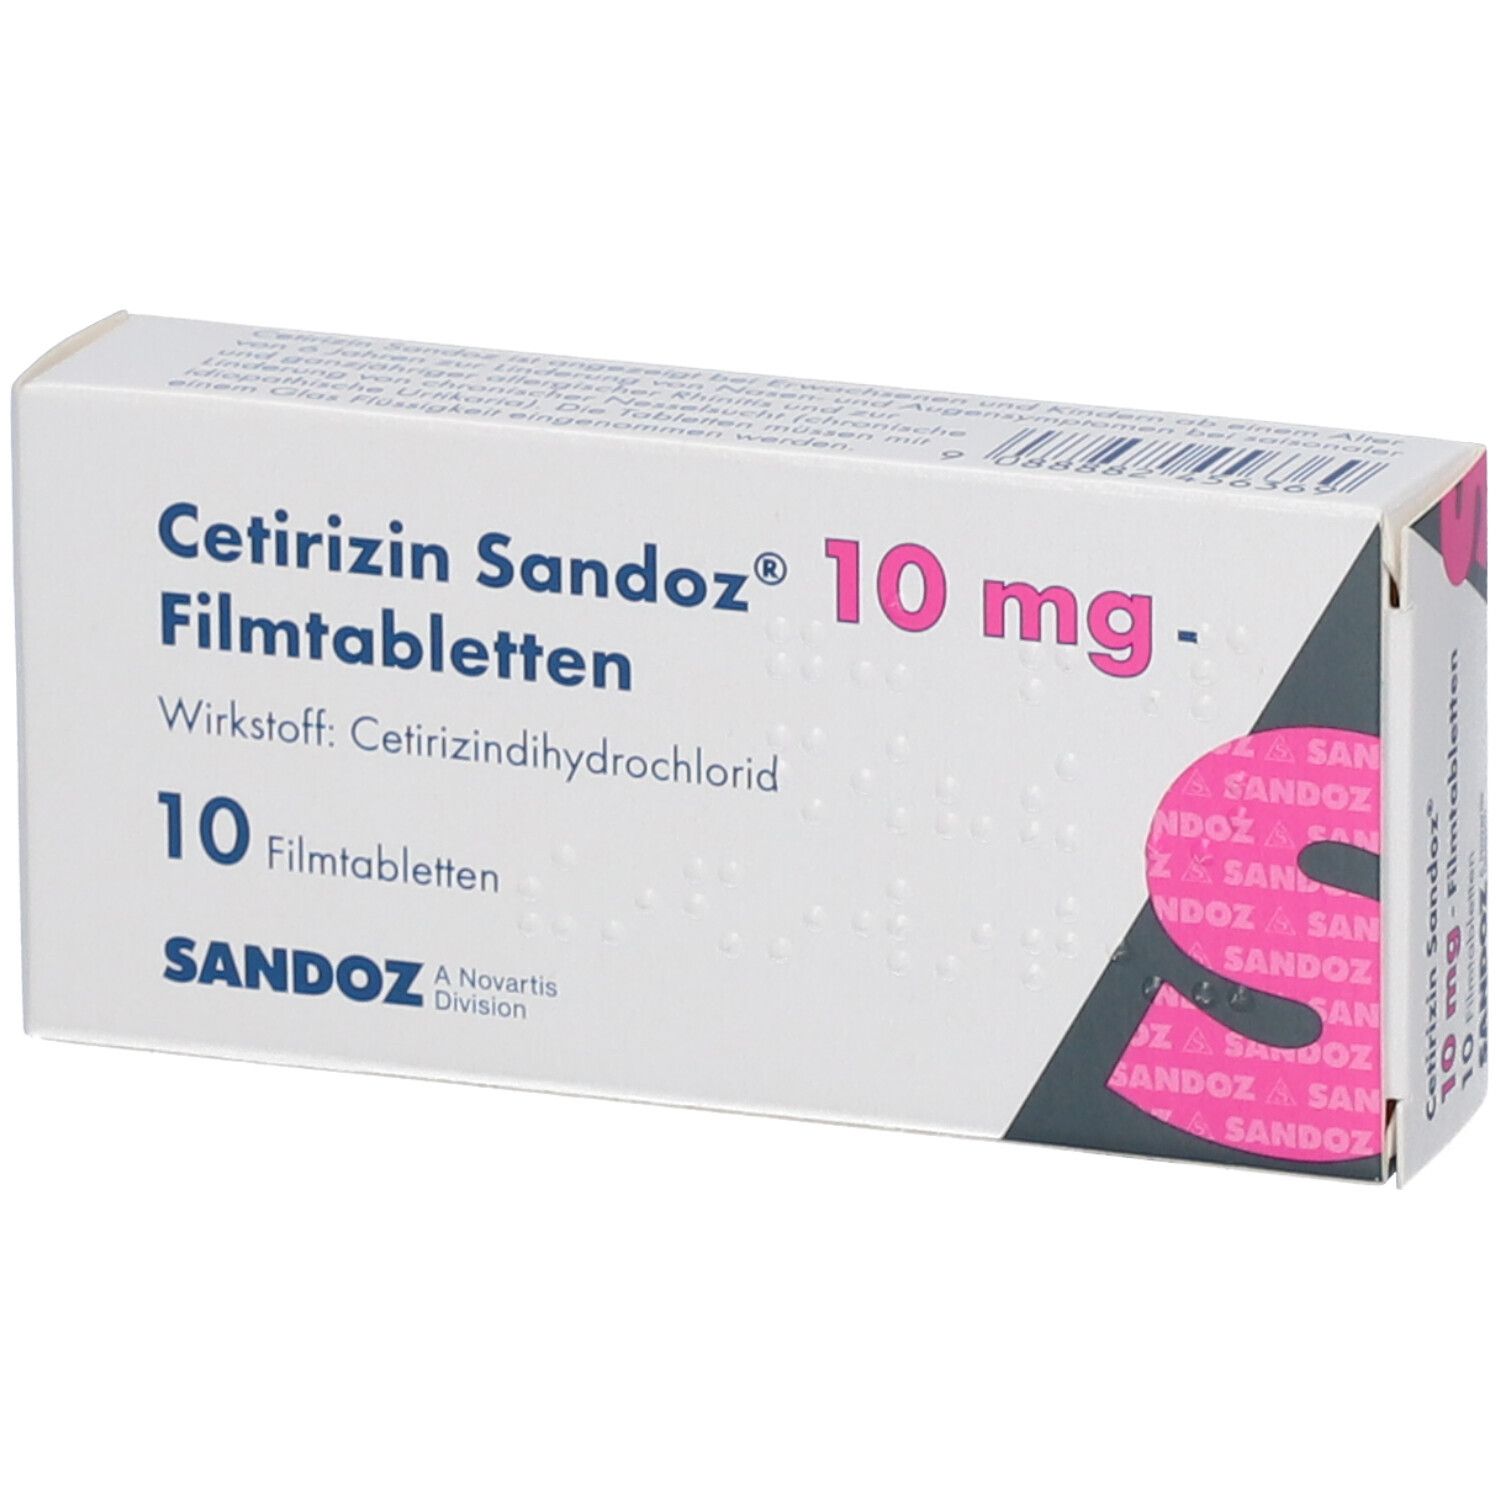 Cetirizin Sandoz® 10 mg